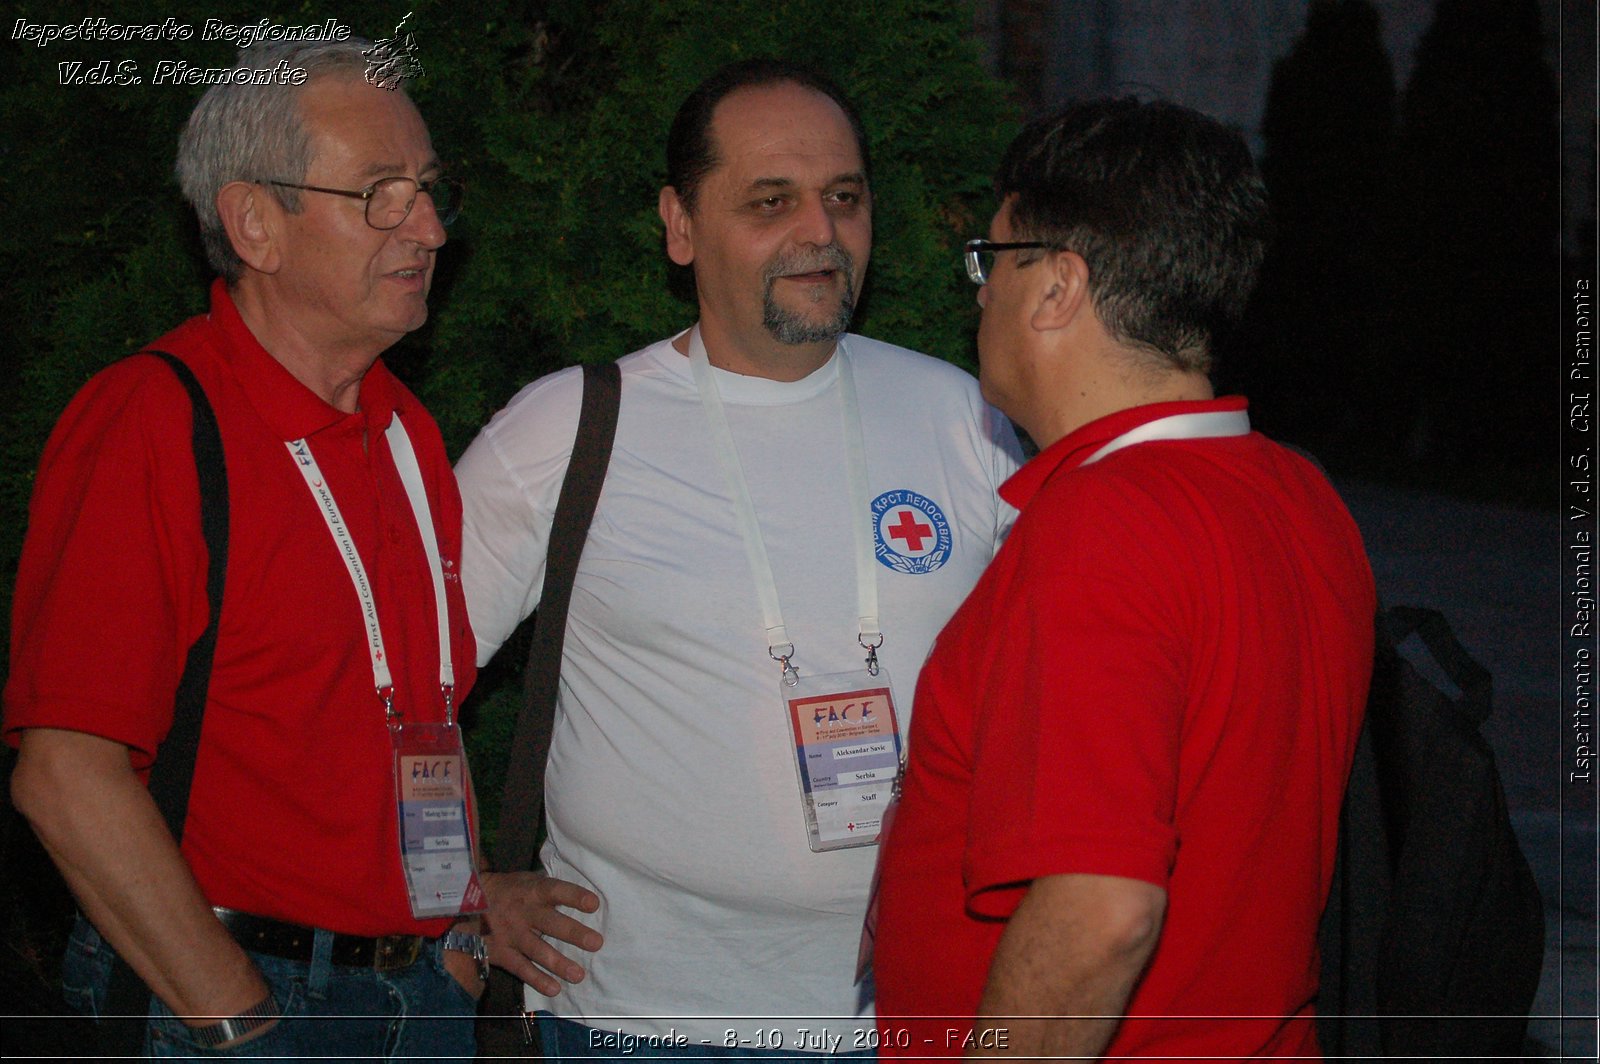 FACE 2010 - First Aid Convention in Europe 8-11 July 2010 Belgrade -  Croce Rossa Italiana - Ispettorato Regionale Volontari del Soccorso Piemonte